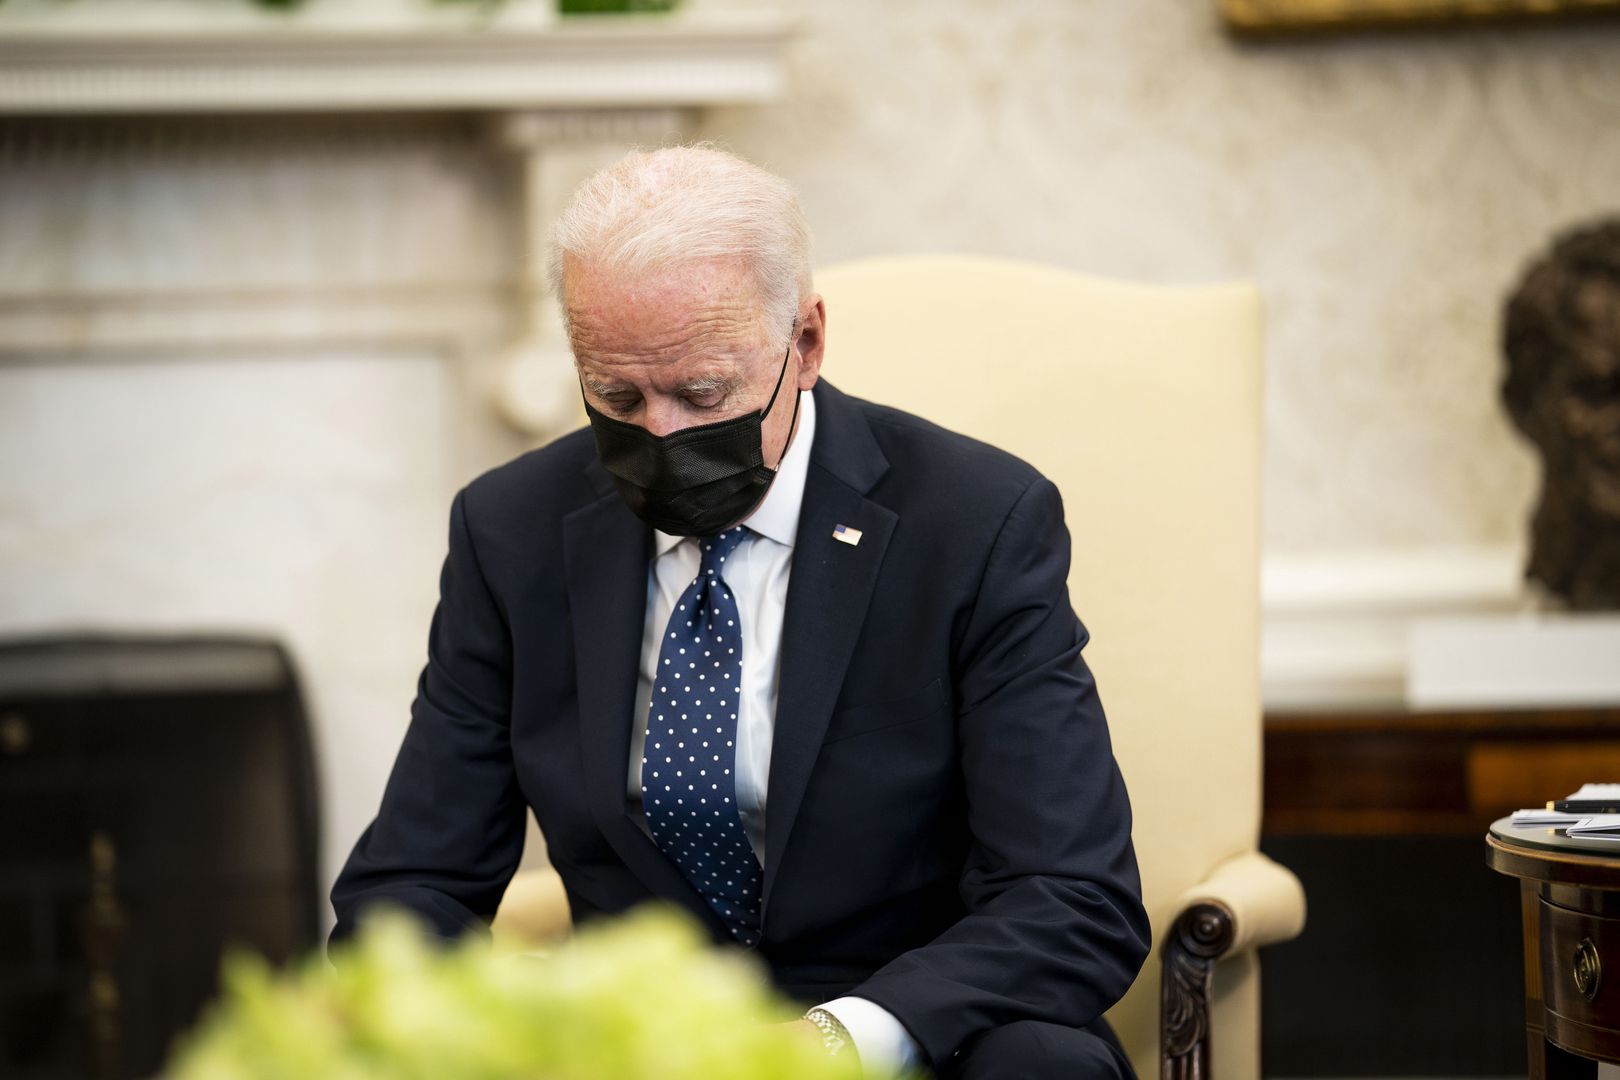 Śmierć, która wstrząsnęła Ameryką. Biden modli się o "prawidłowy werdykt"